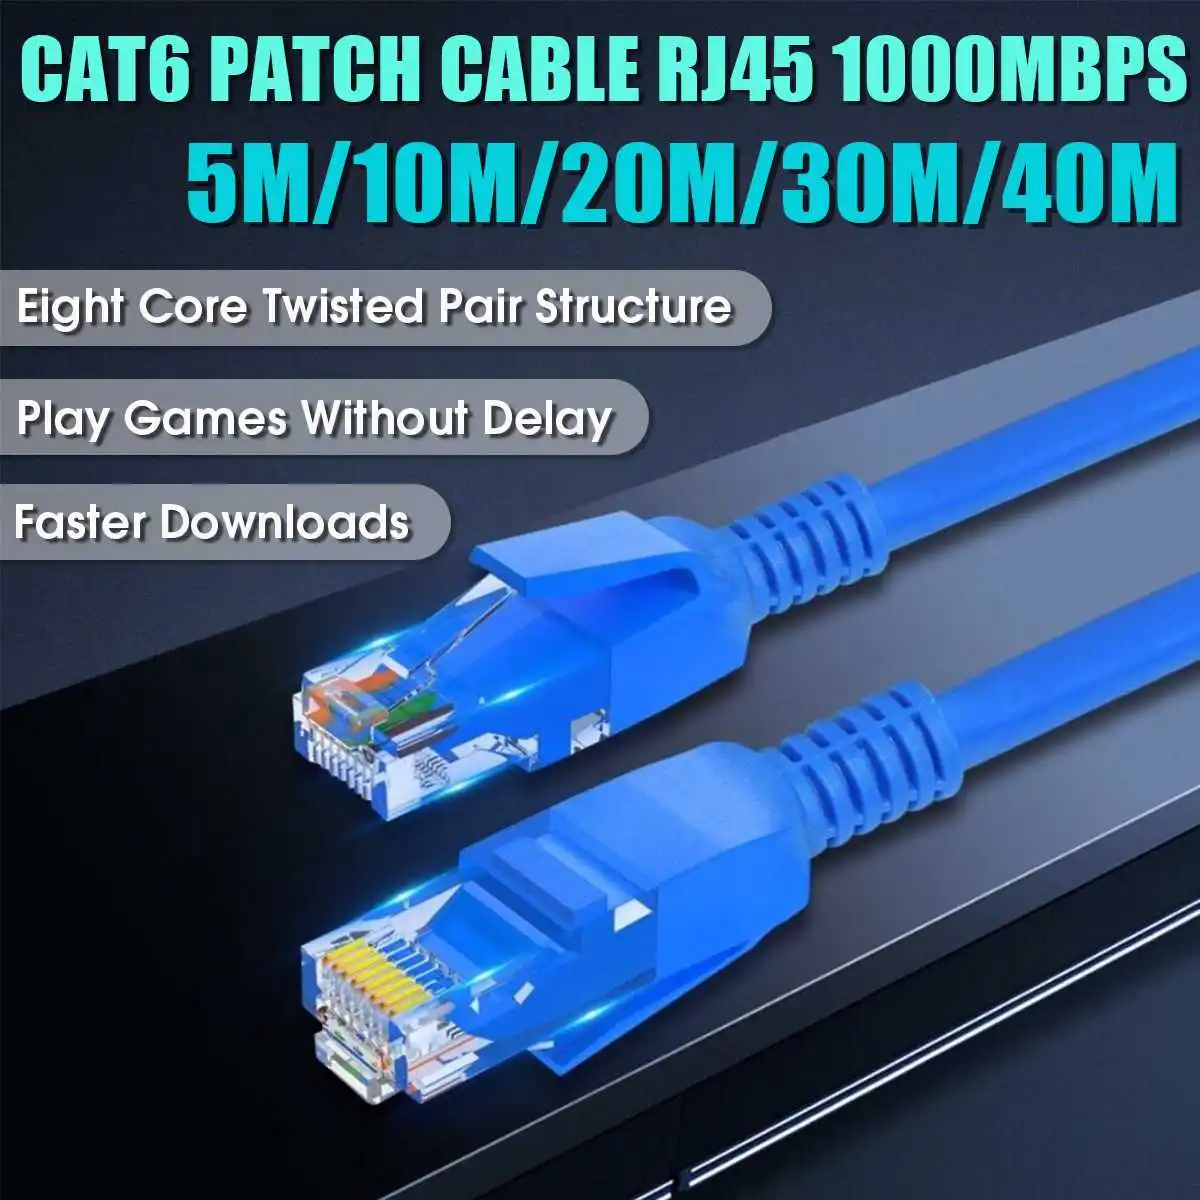 Blanco deleyCON 30m Cat.6 Ethernet Gigabit LAN Cable de Red RJ45 CAT6 Cable de Conexión U/UTP Compatible con Cat.5 Cat.5e Cat.6a Cat.7 